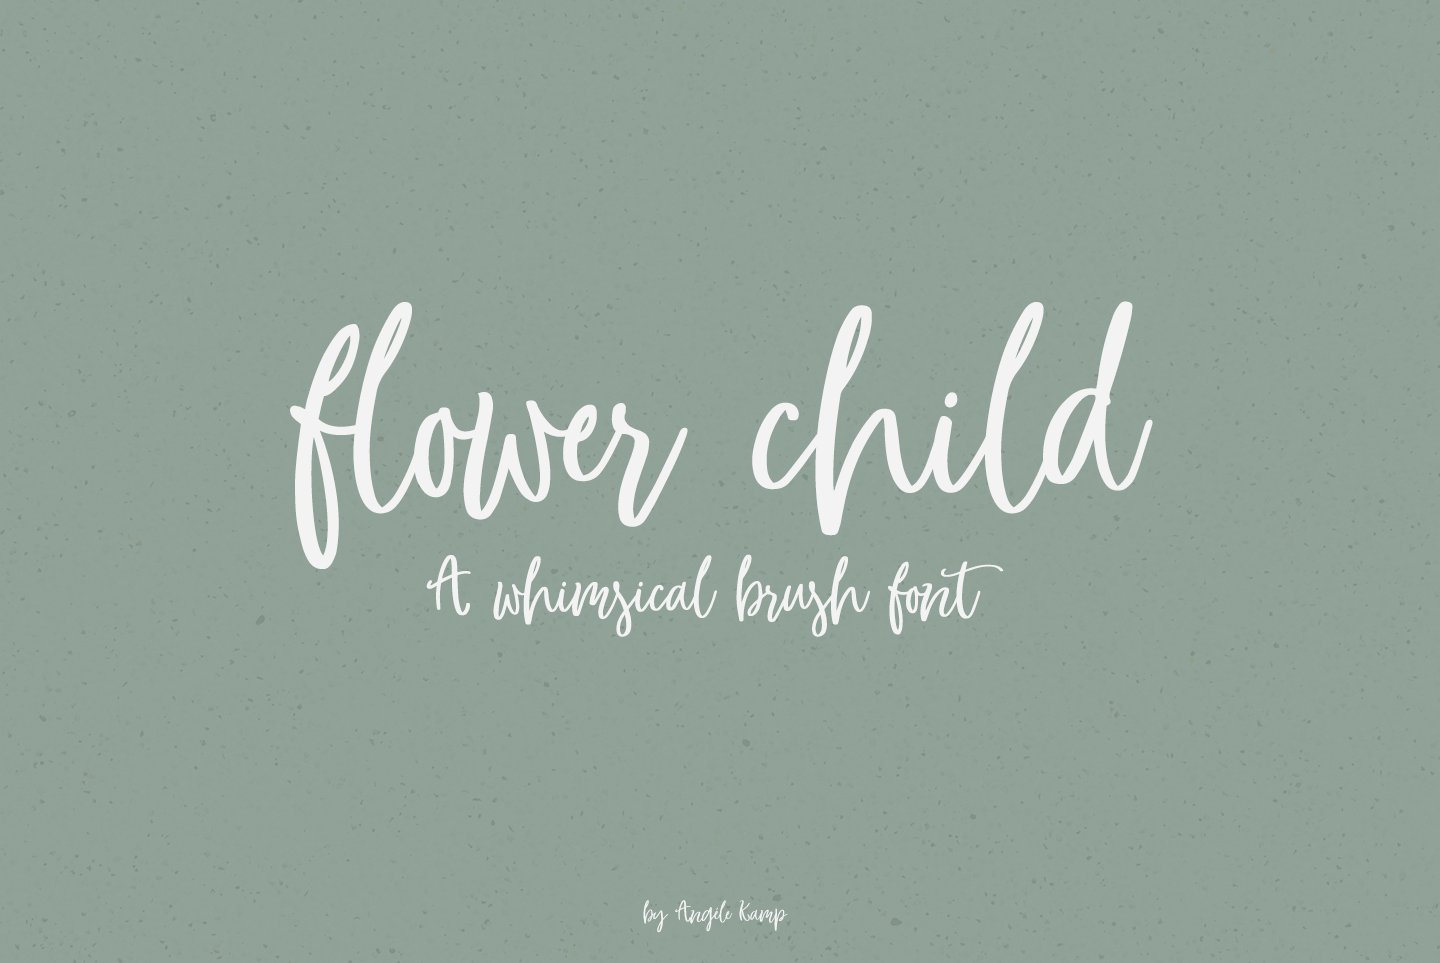 Flower Child whimsical brush font cover image.